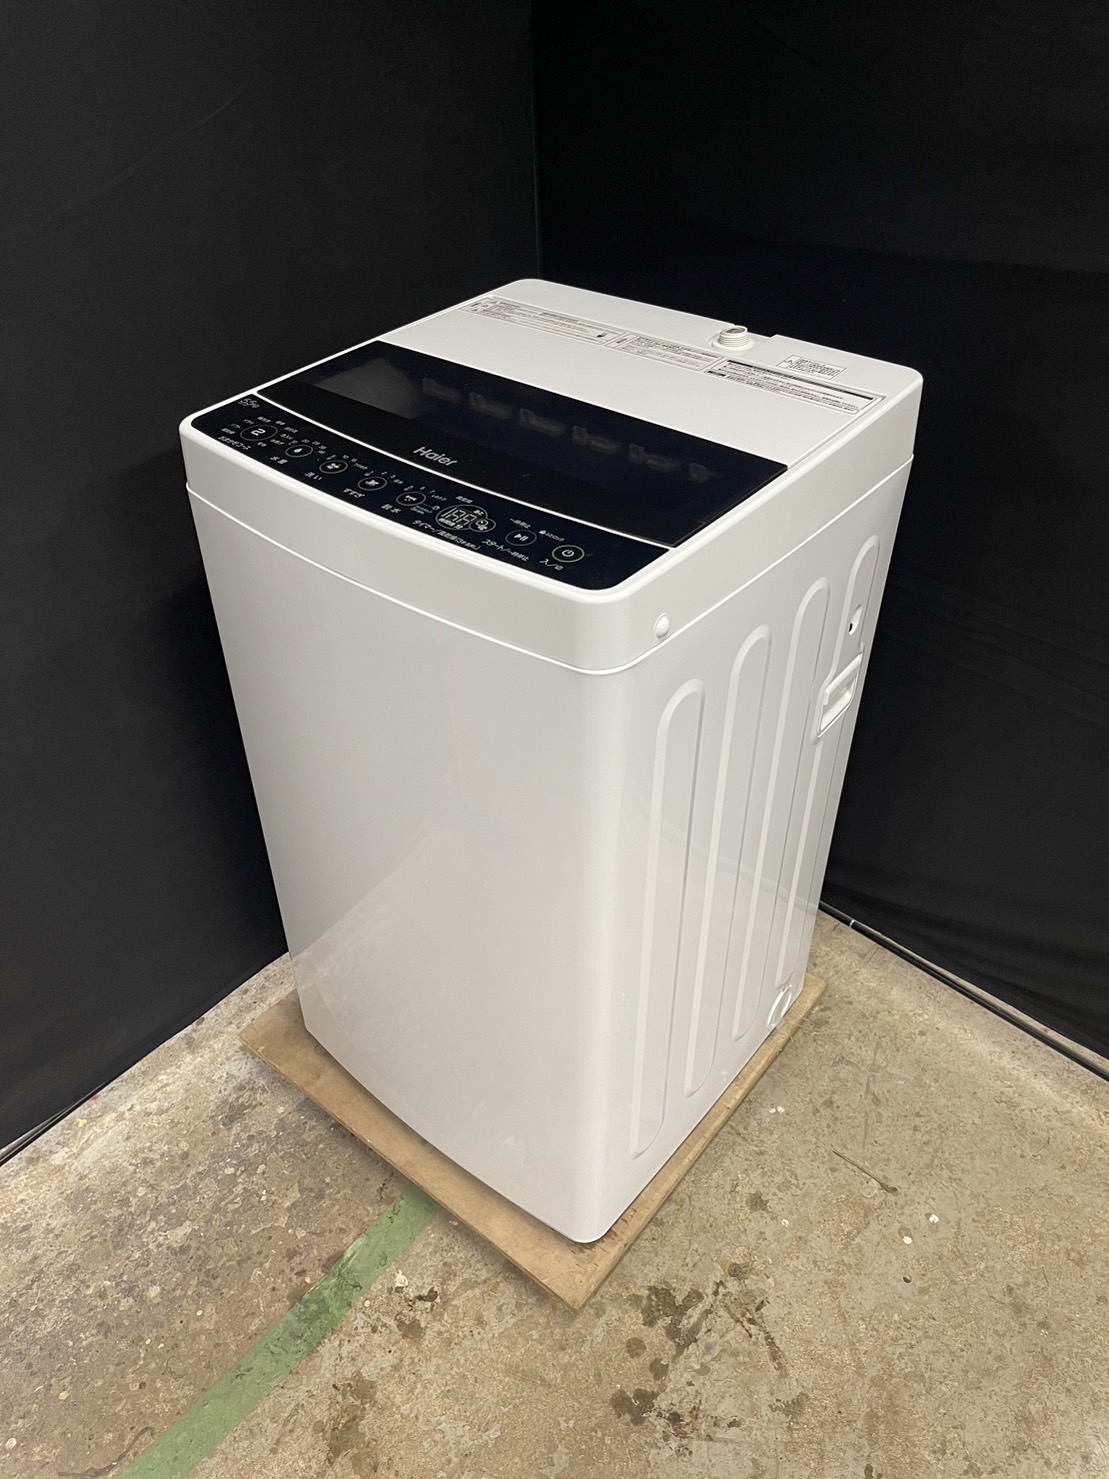 ハイアール 5.5㎏ 単身用洗濯機 JW-C55D 2021年製 新生活 激安家電 